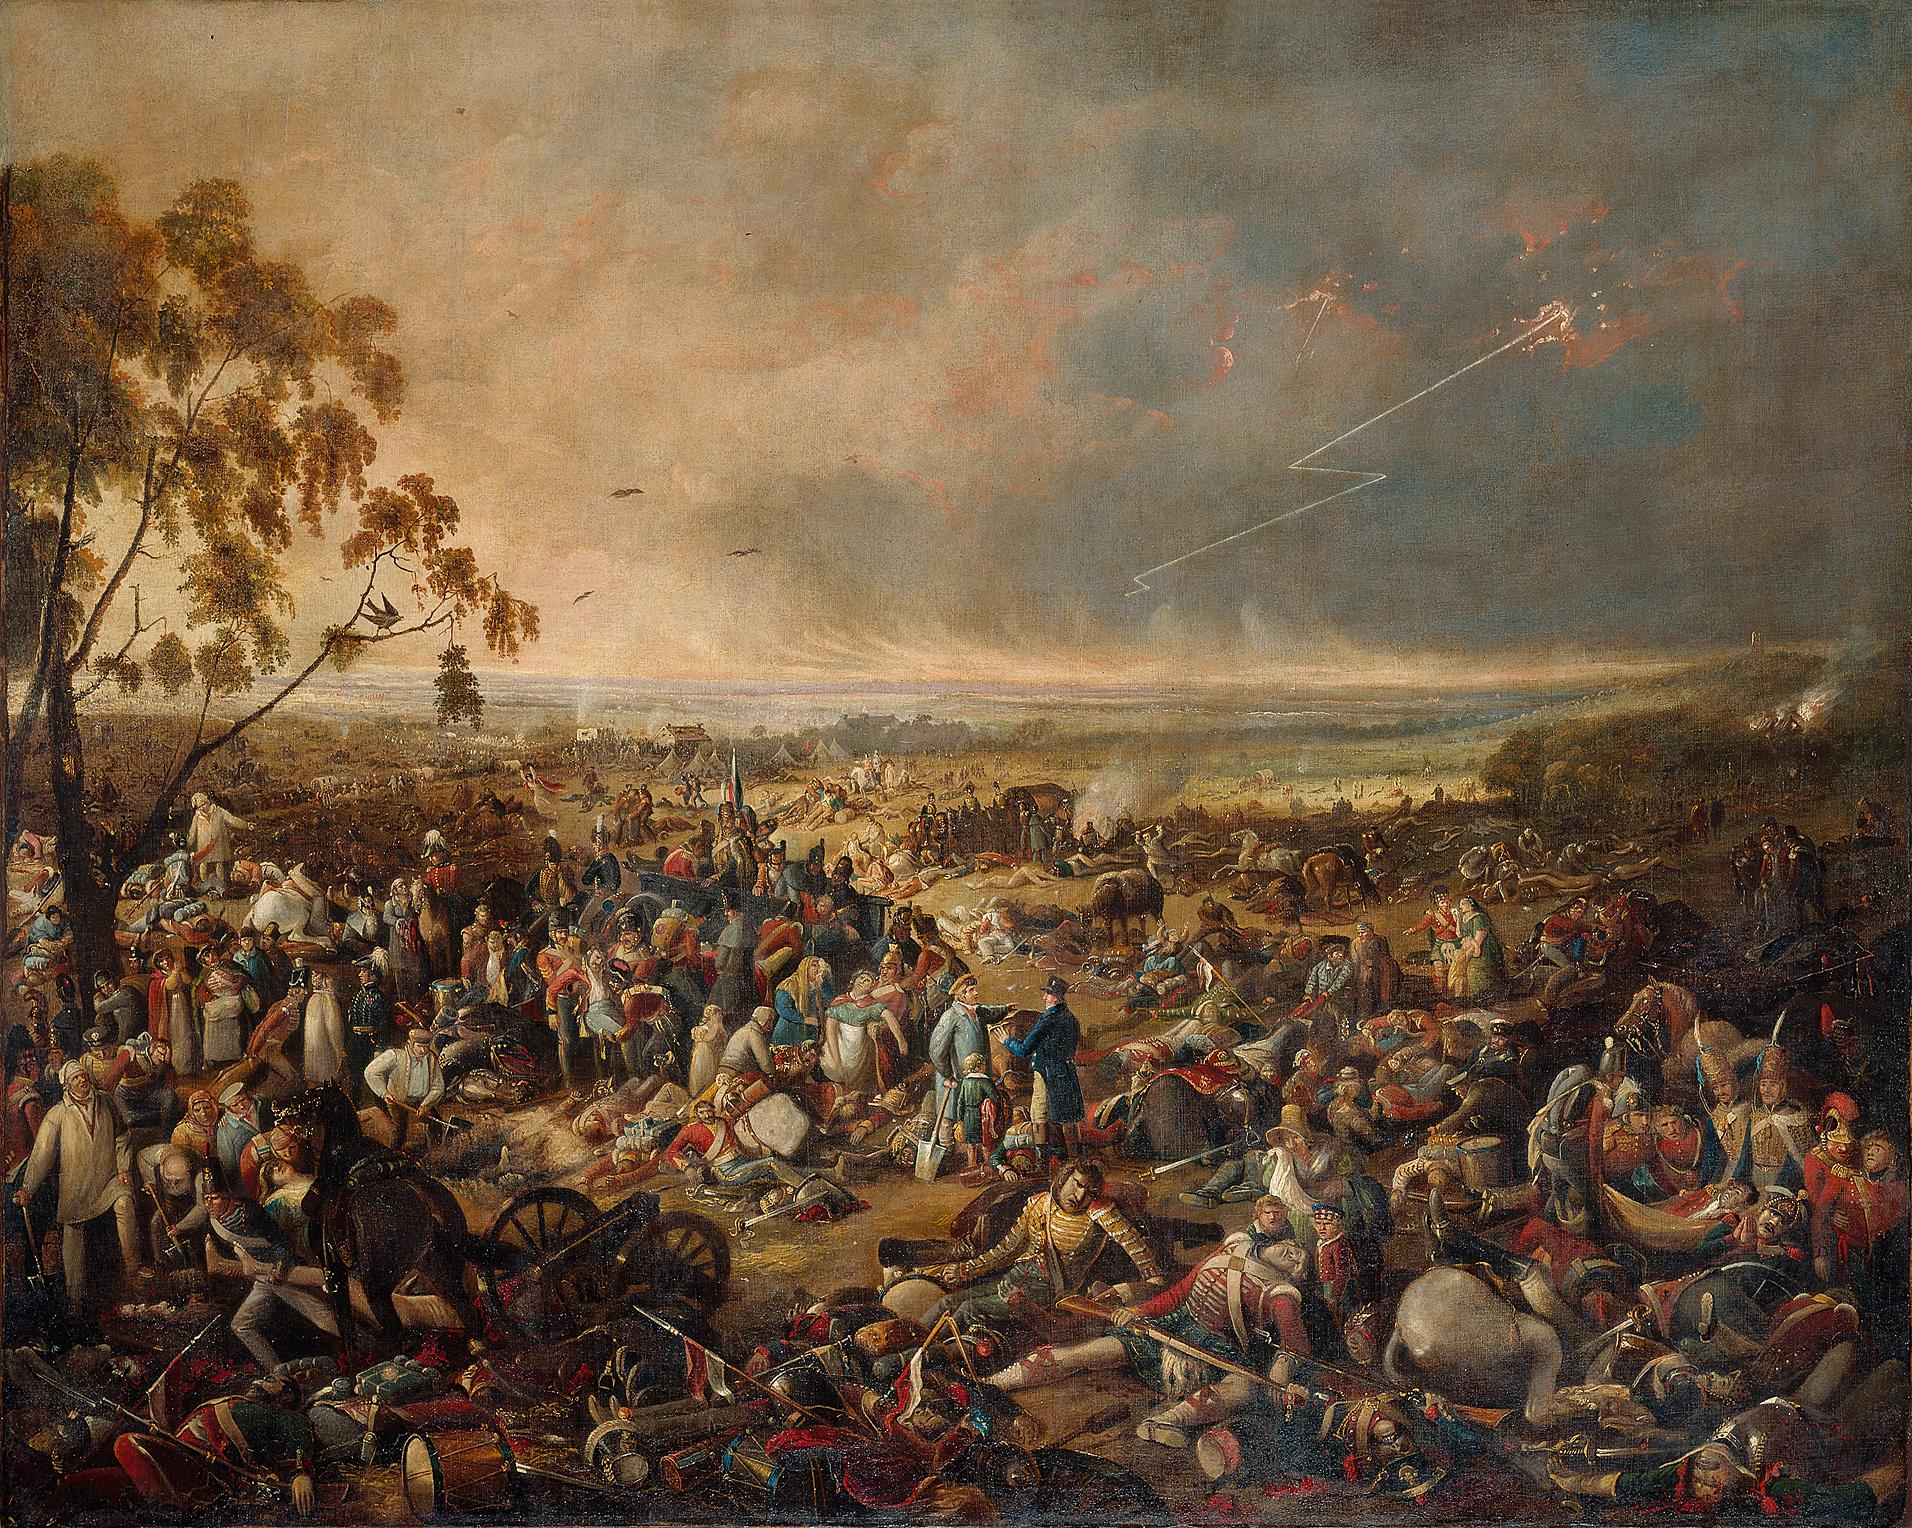 Gemälde: Am Morgen nach der Schlacht von Waterloo am 19. Juni 1815